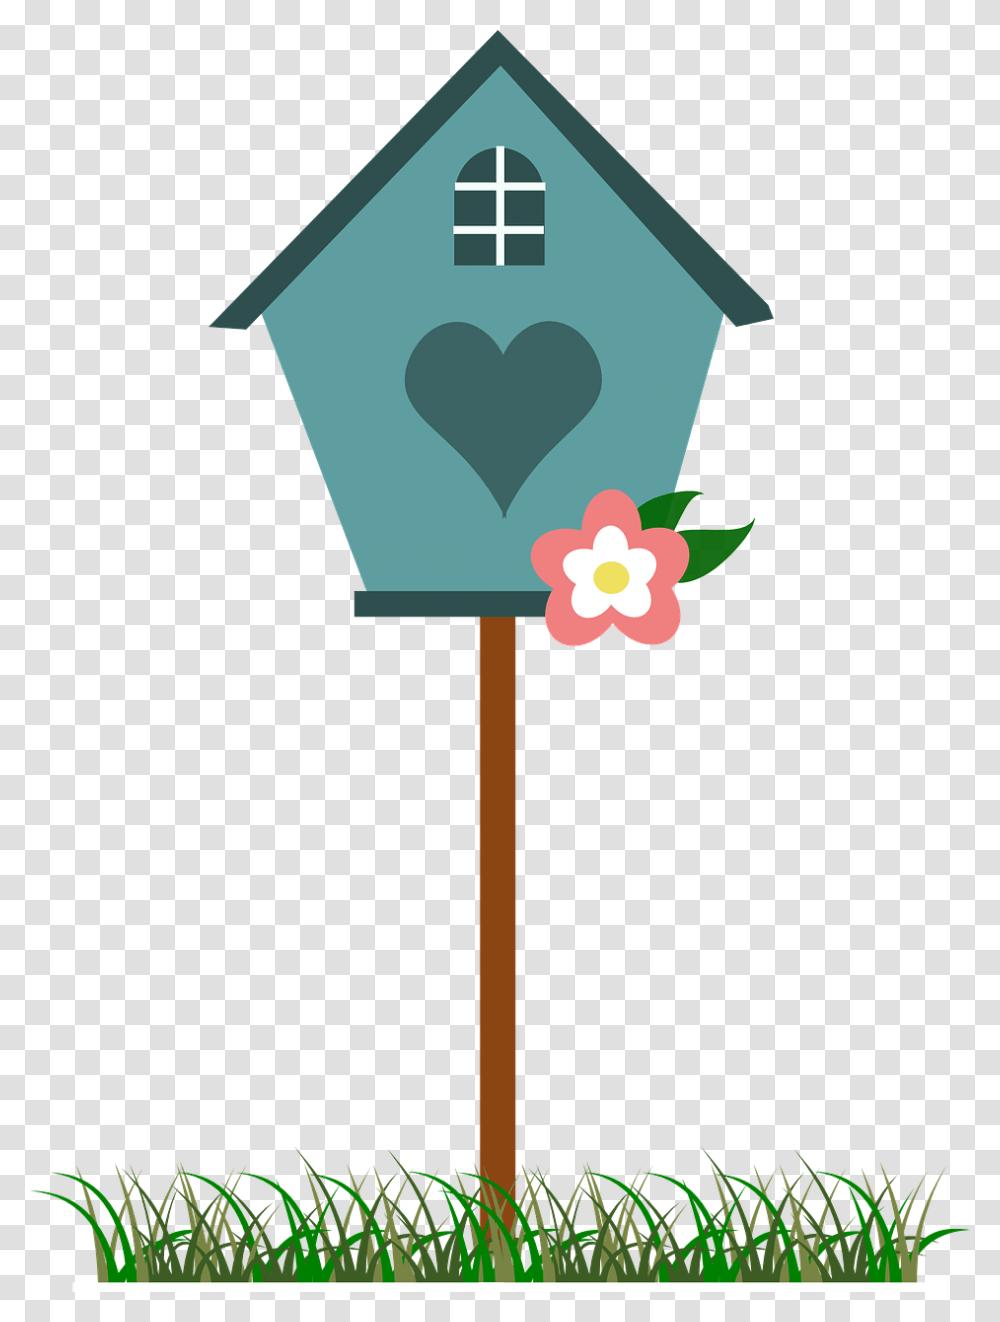 Cute Bird House Clipart, Cross, Lamp Post, Light Transparent Png